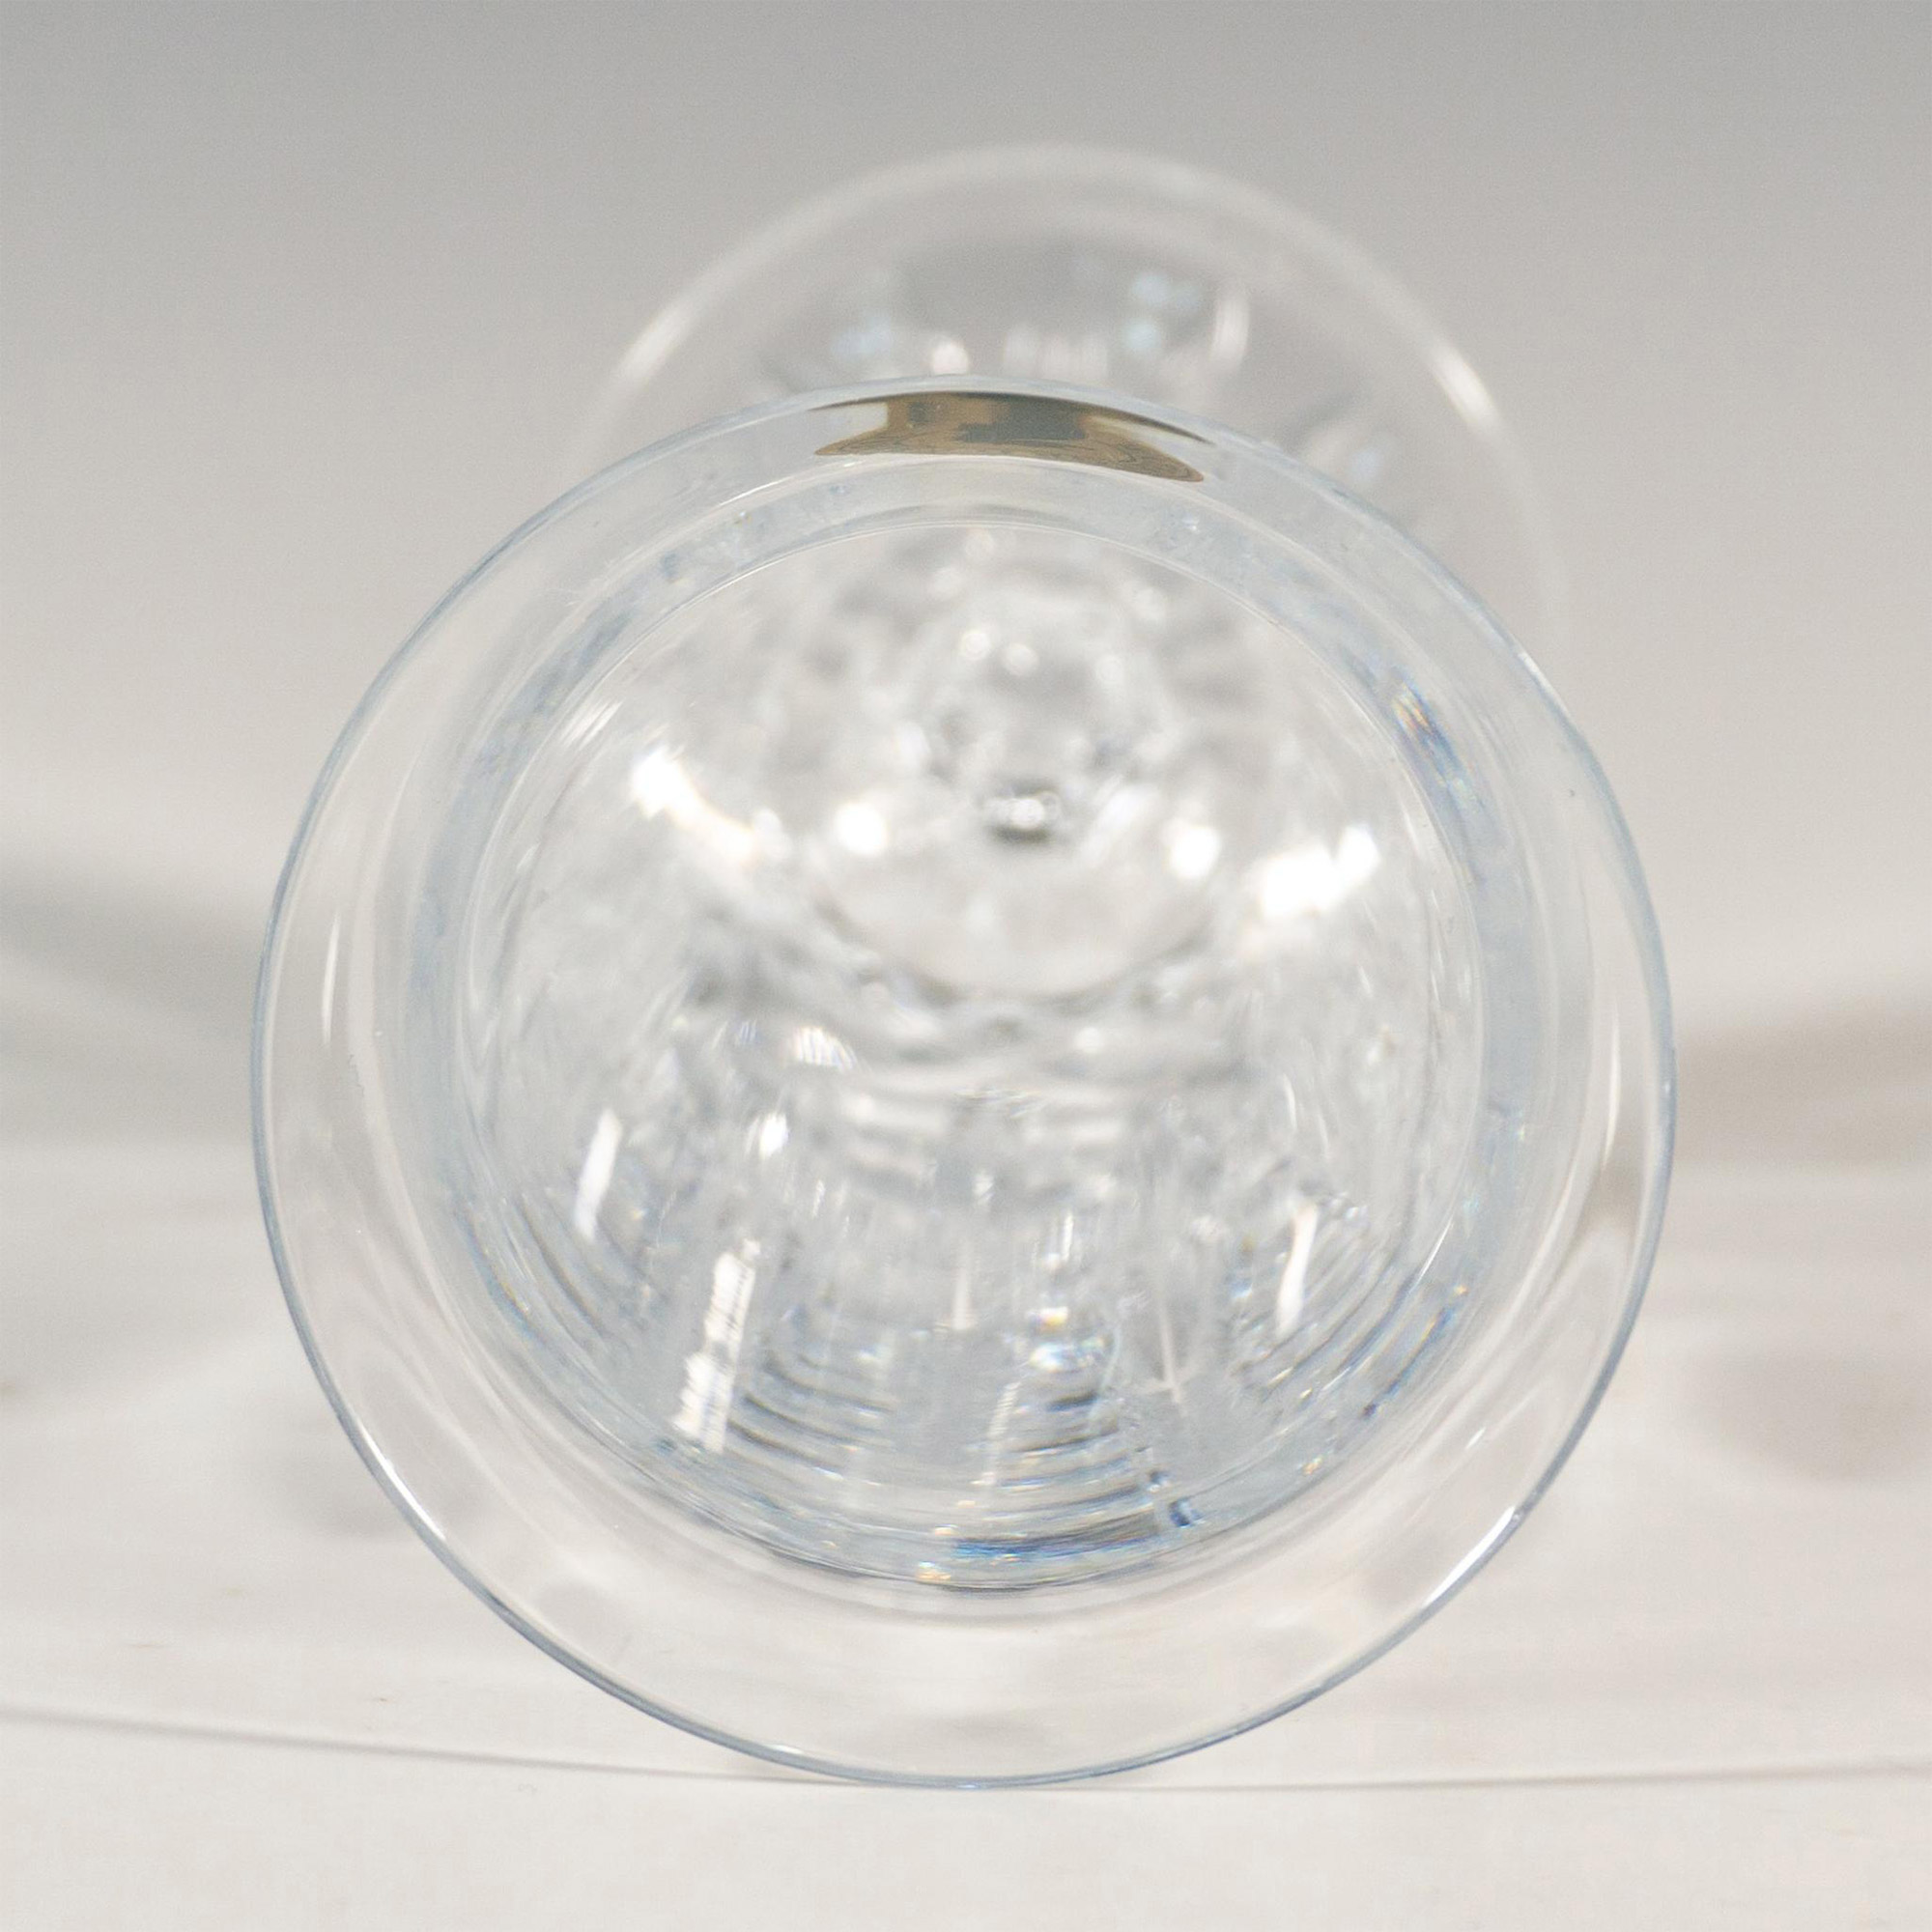 Waterford Crystal Bud Vase, Lismore - Image 4 of 4